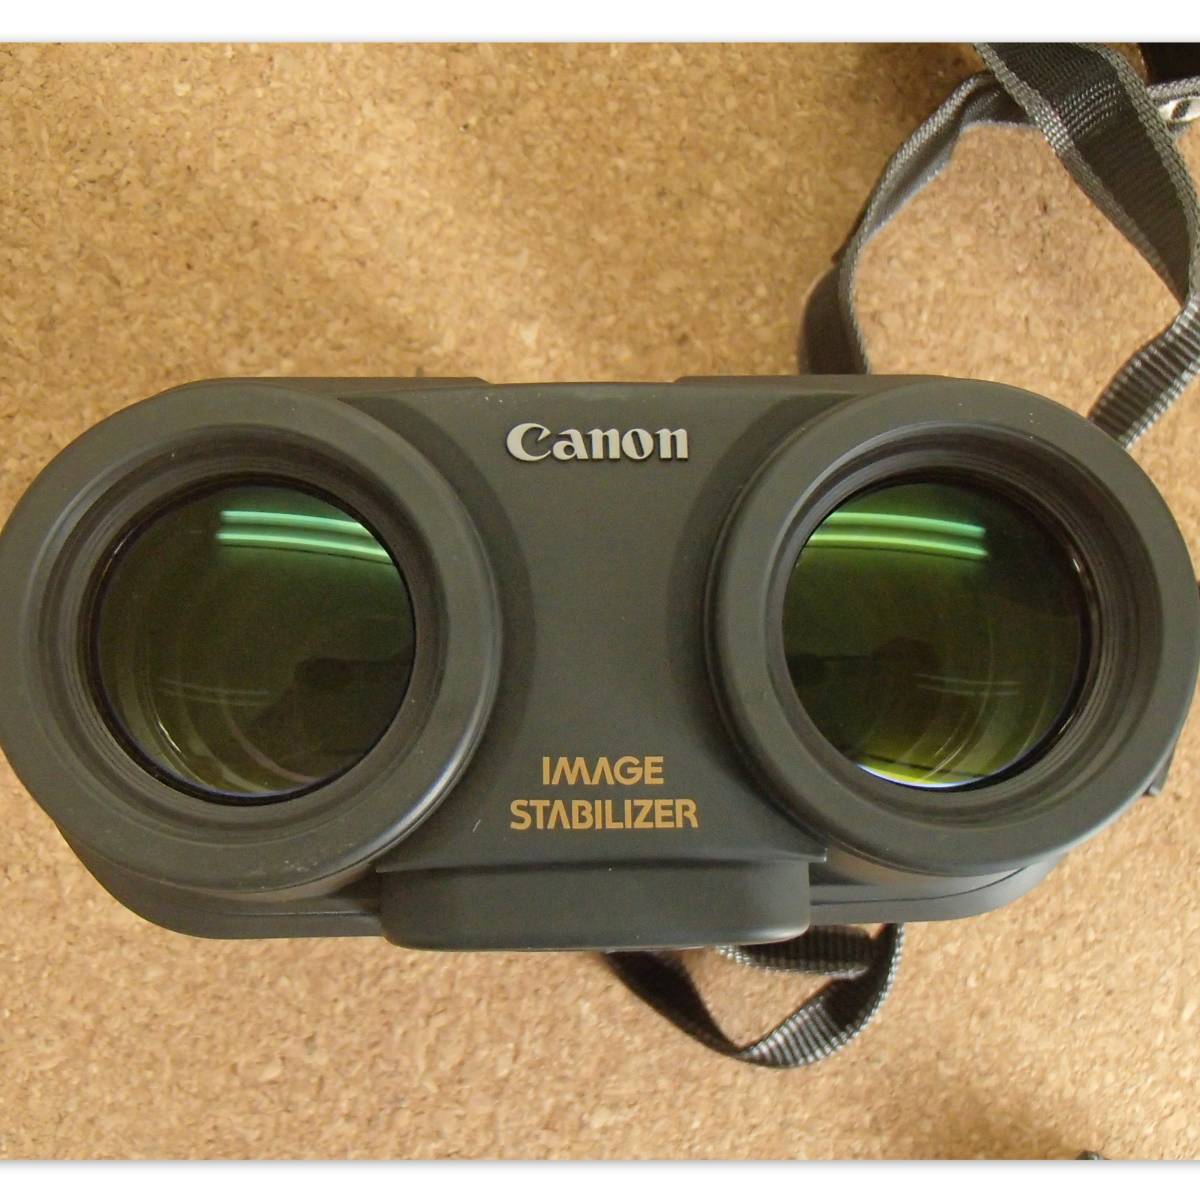 動作確認済 ケース付き キャノン 12×36 IS 5.6° IMAGE STABILIZER 12倍 Canon イメージ スタビライザー 双眼鏡 防振機能 _画像6